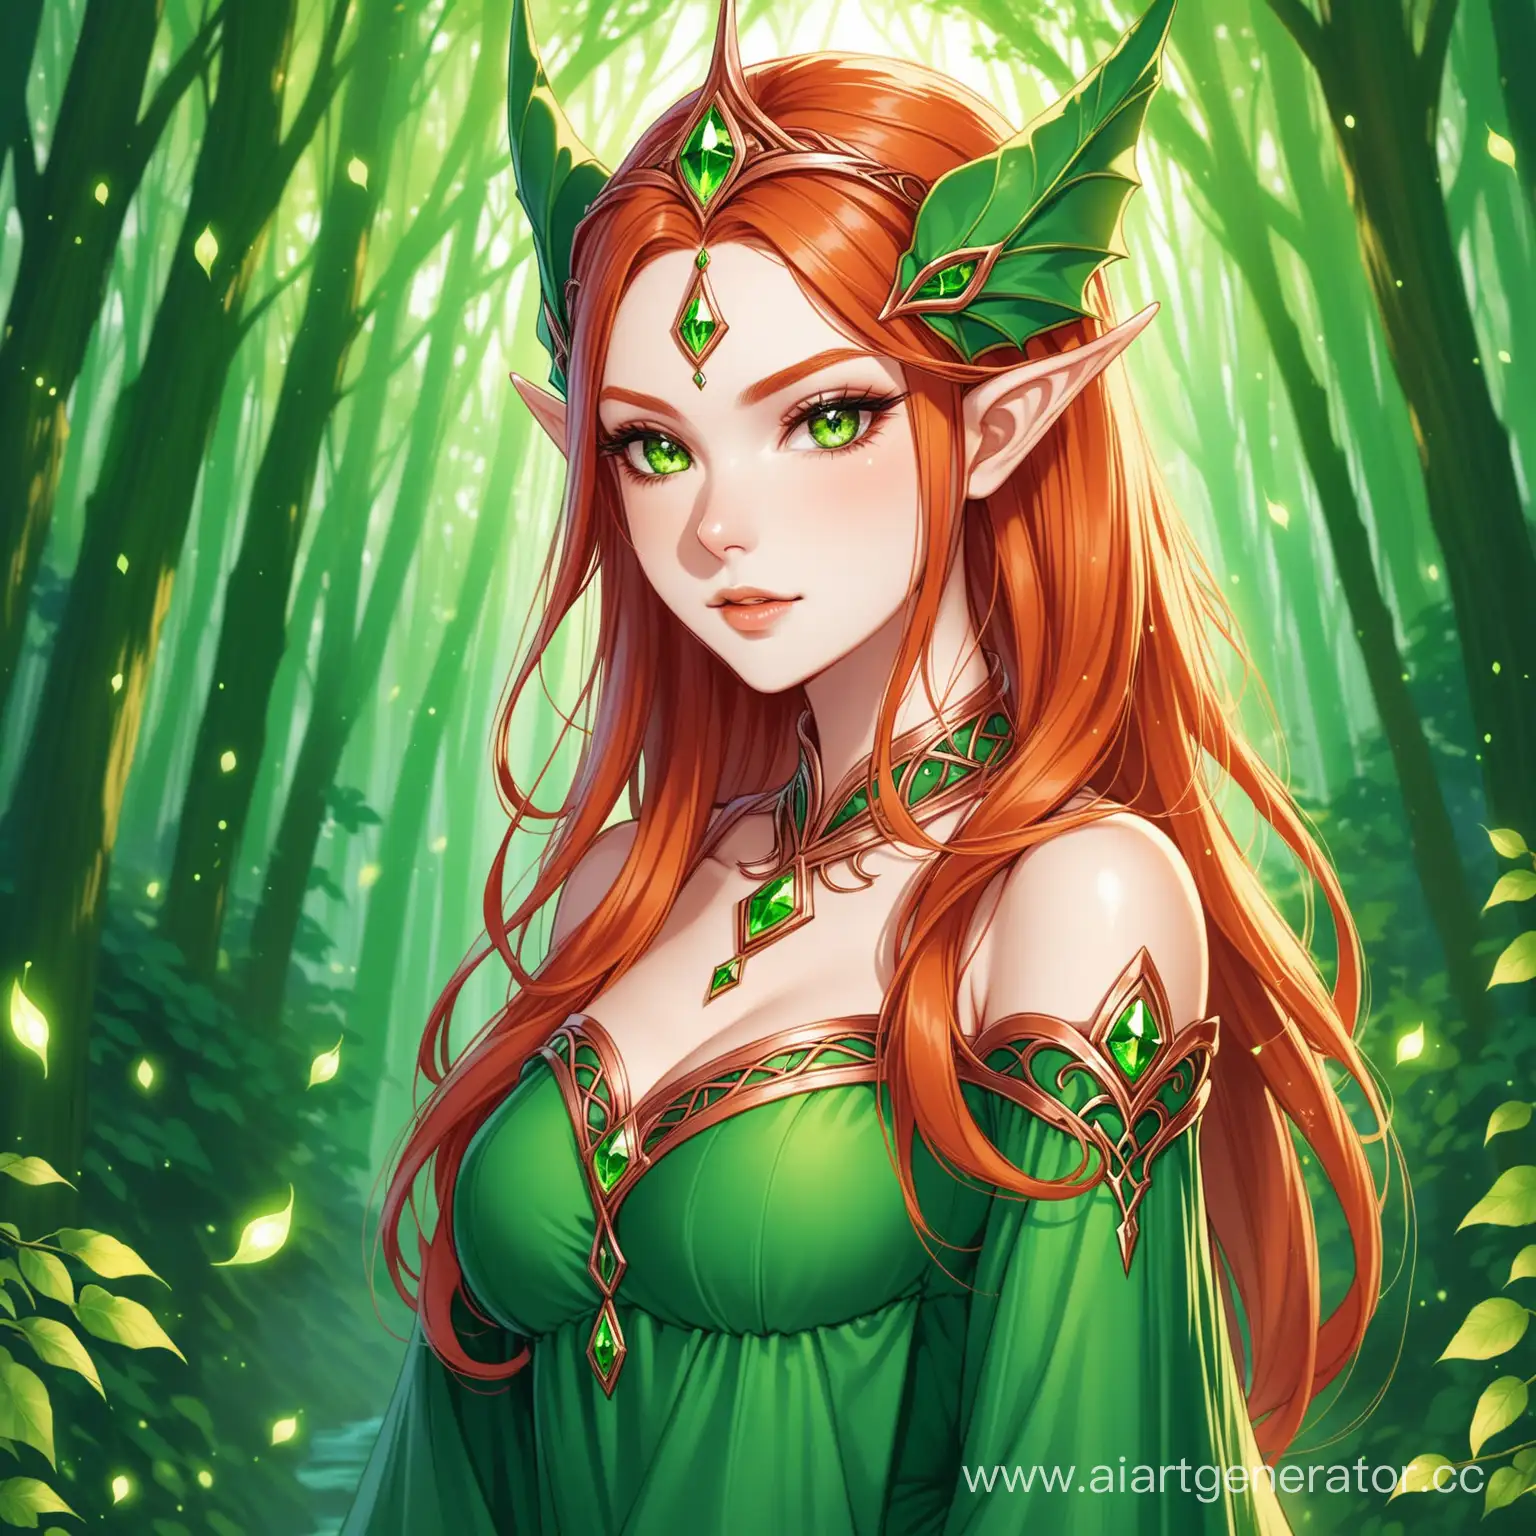 Эльфийка королева колдунья с медными волосами и чарующими зелёными глазами